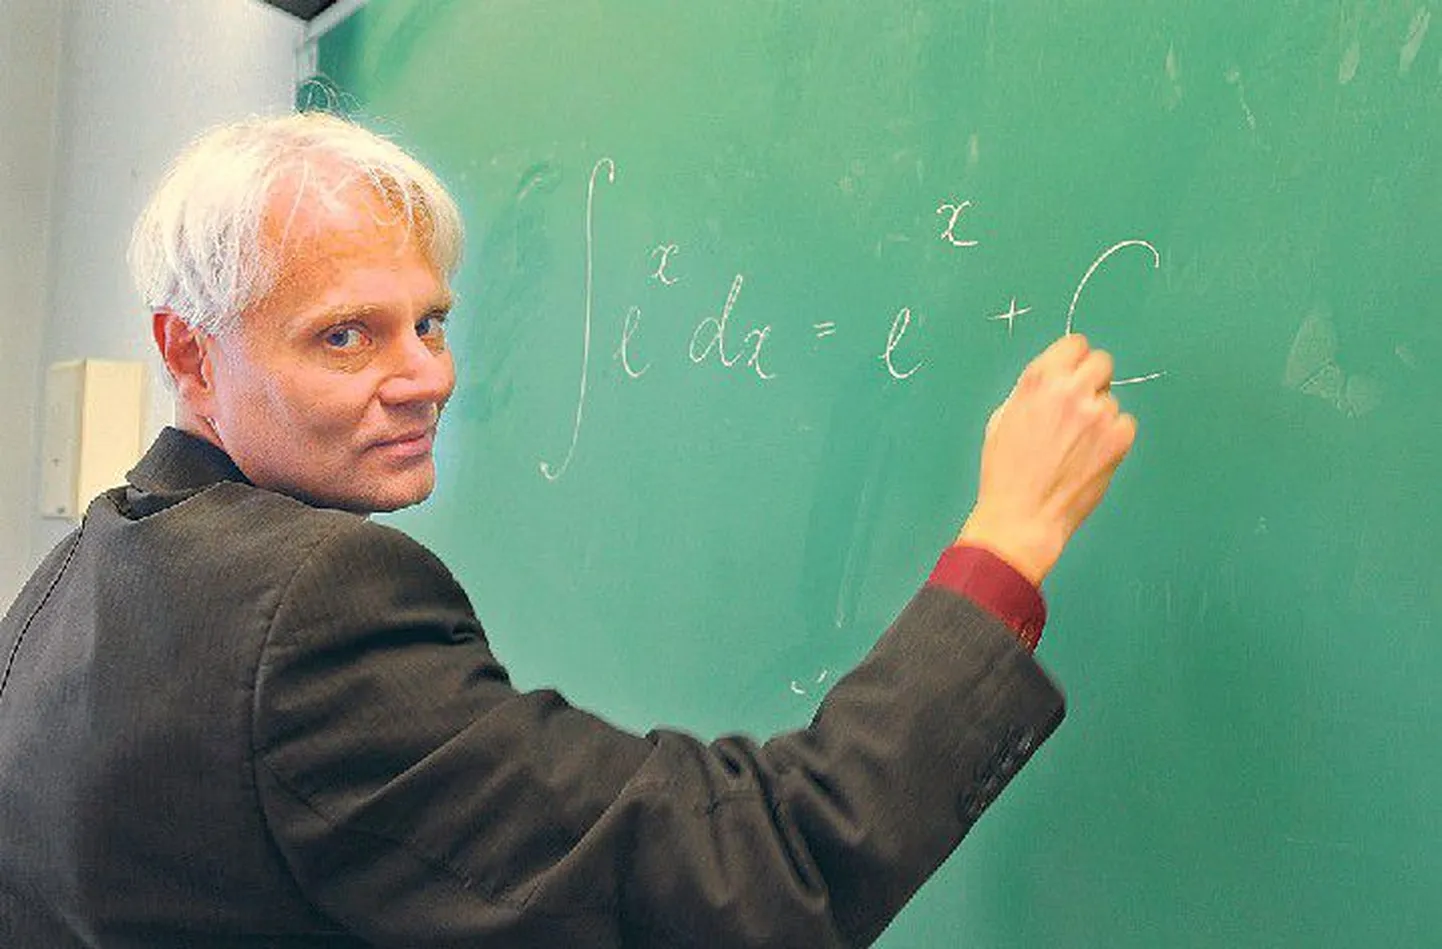 По словам учителя математики Таллиннской реальной школы Виллу Рая, новая учебная программа напоминает ему ту самую математику, которую он изучал в школе в 80-х годах, поскольку в промежутке программа упростились.